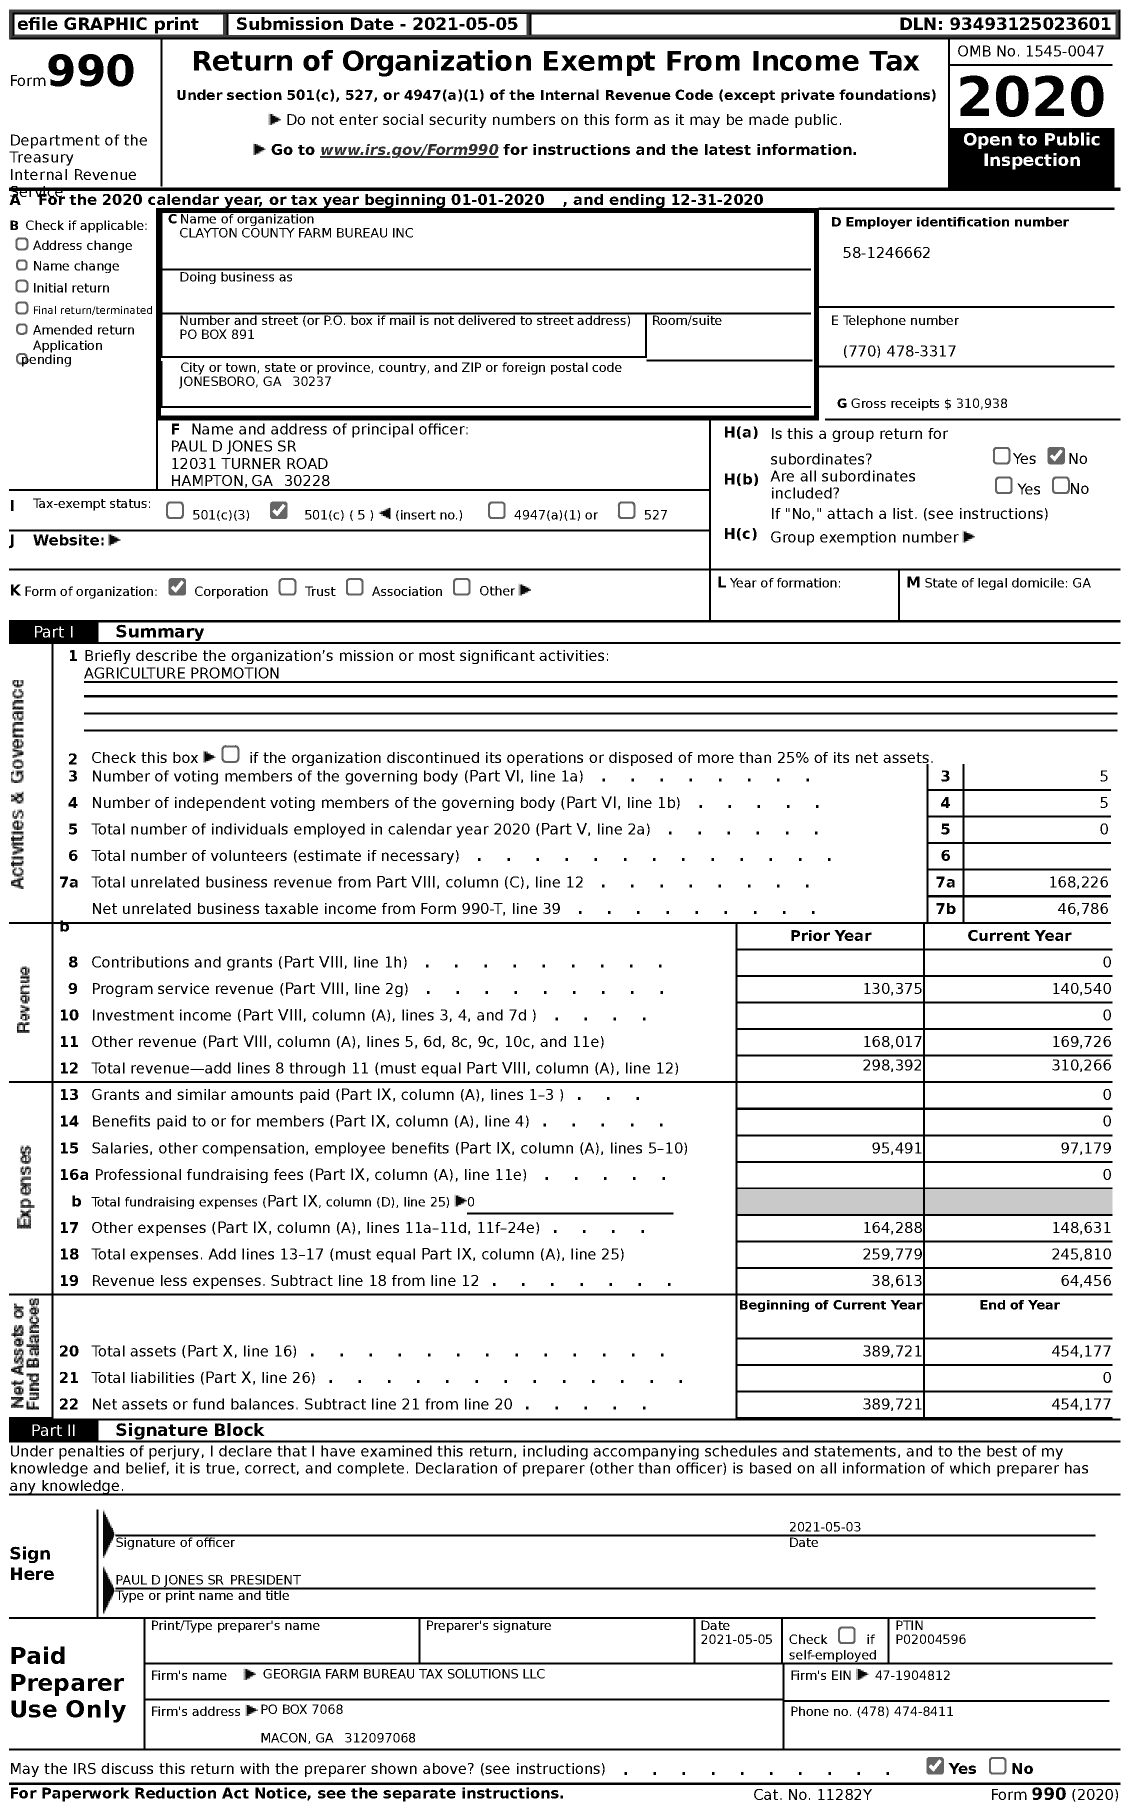 Image of first page of 2020 Form 990 for Georgia Farm Bureau Federation - Clayton County Farm Bureau